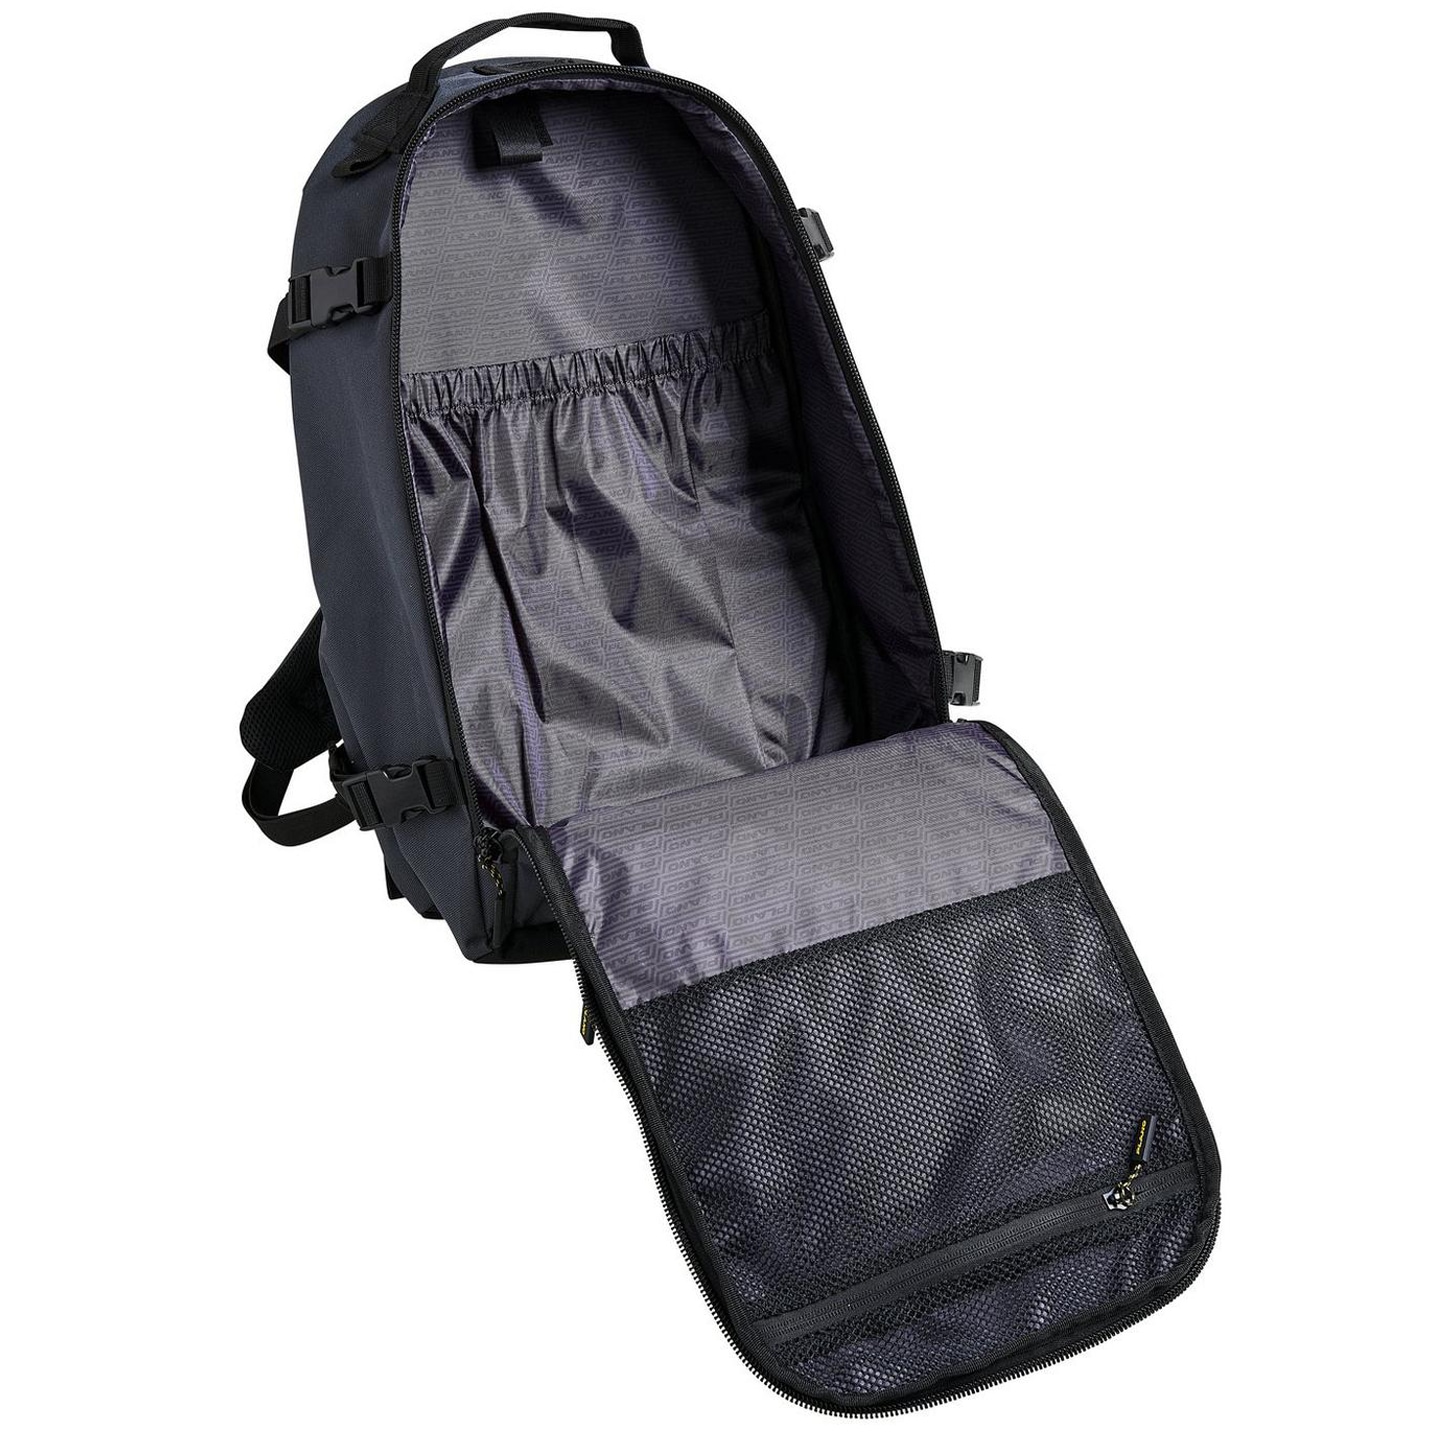 Plecak Plano Tactical Backpack 29 l - Black 